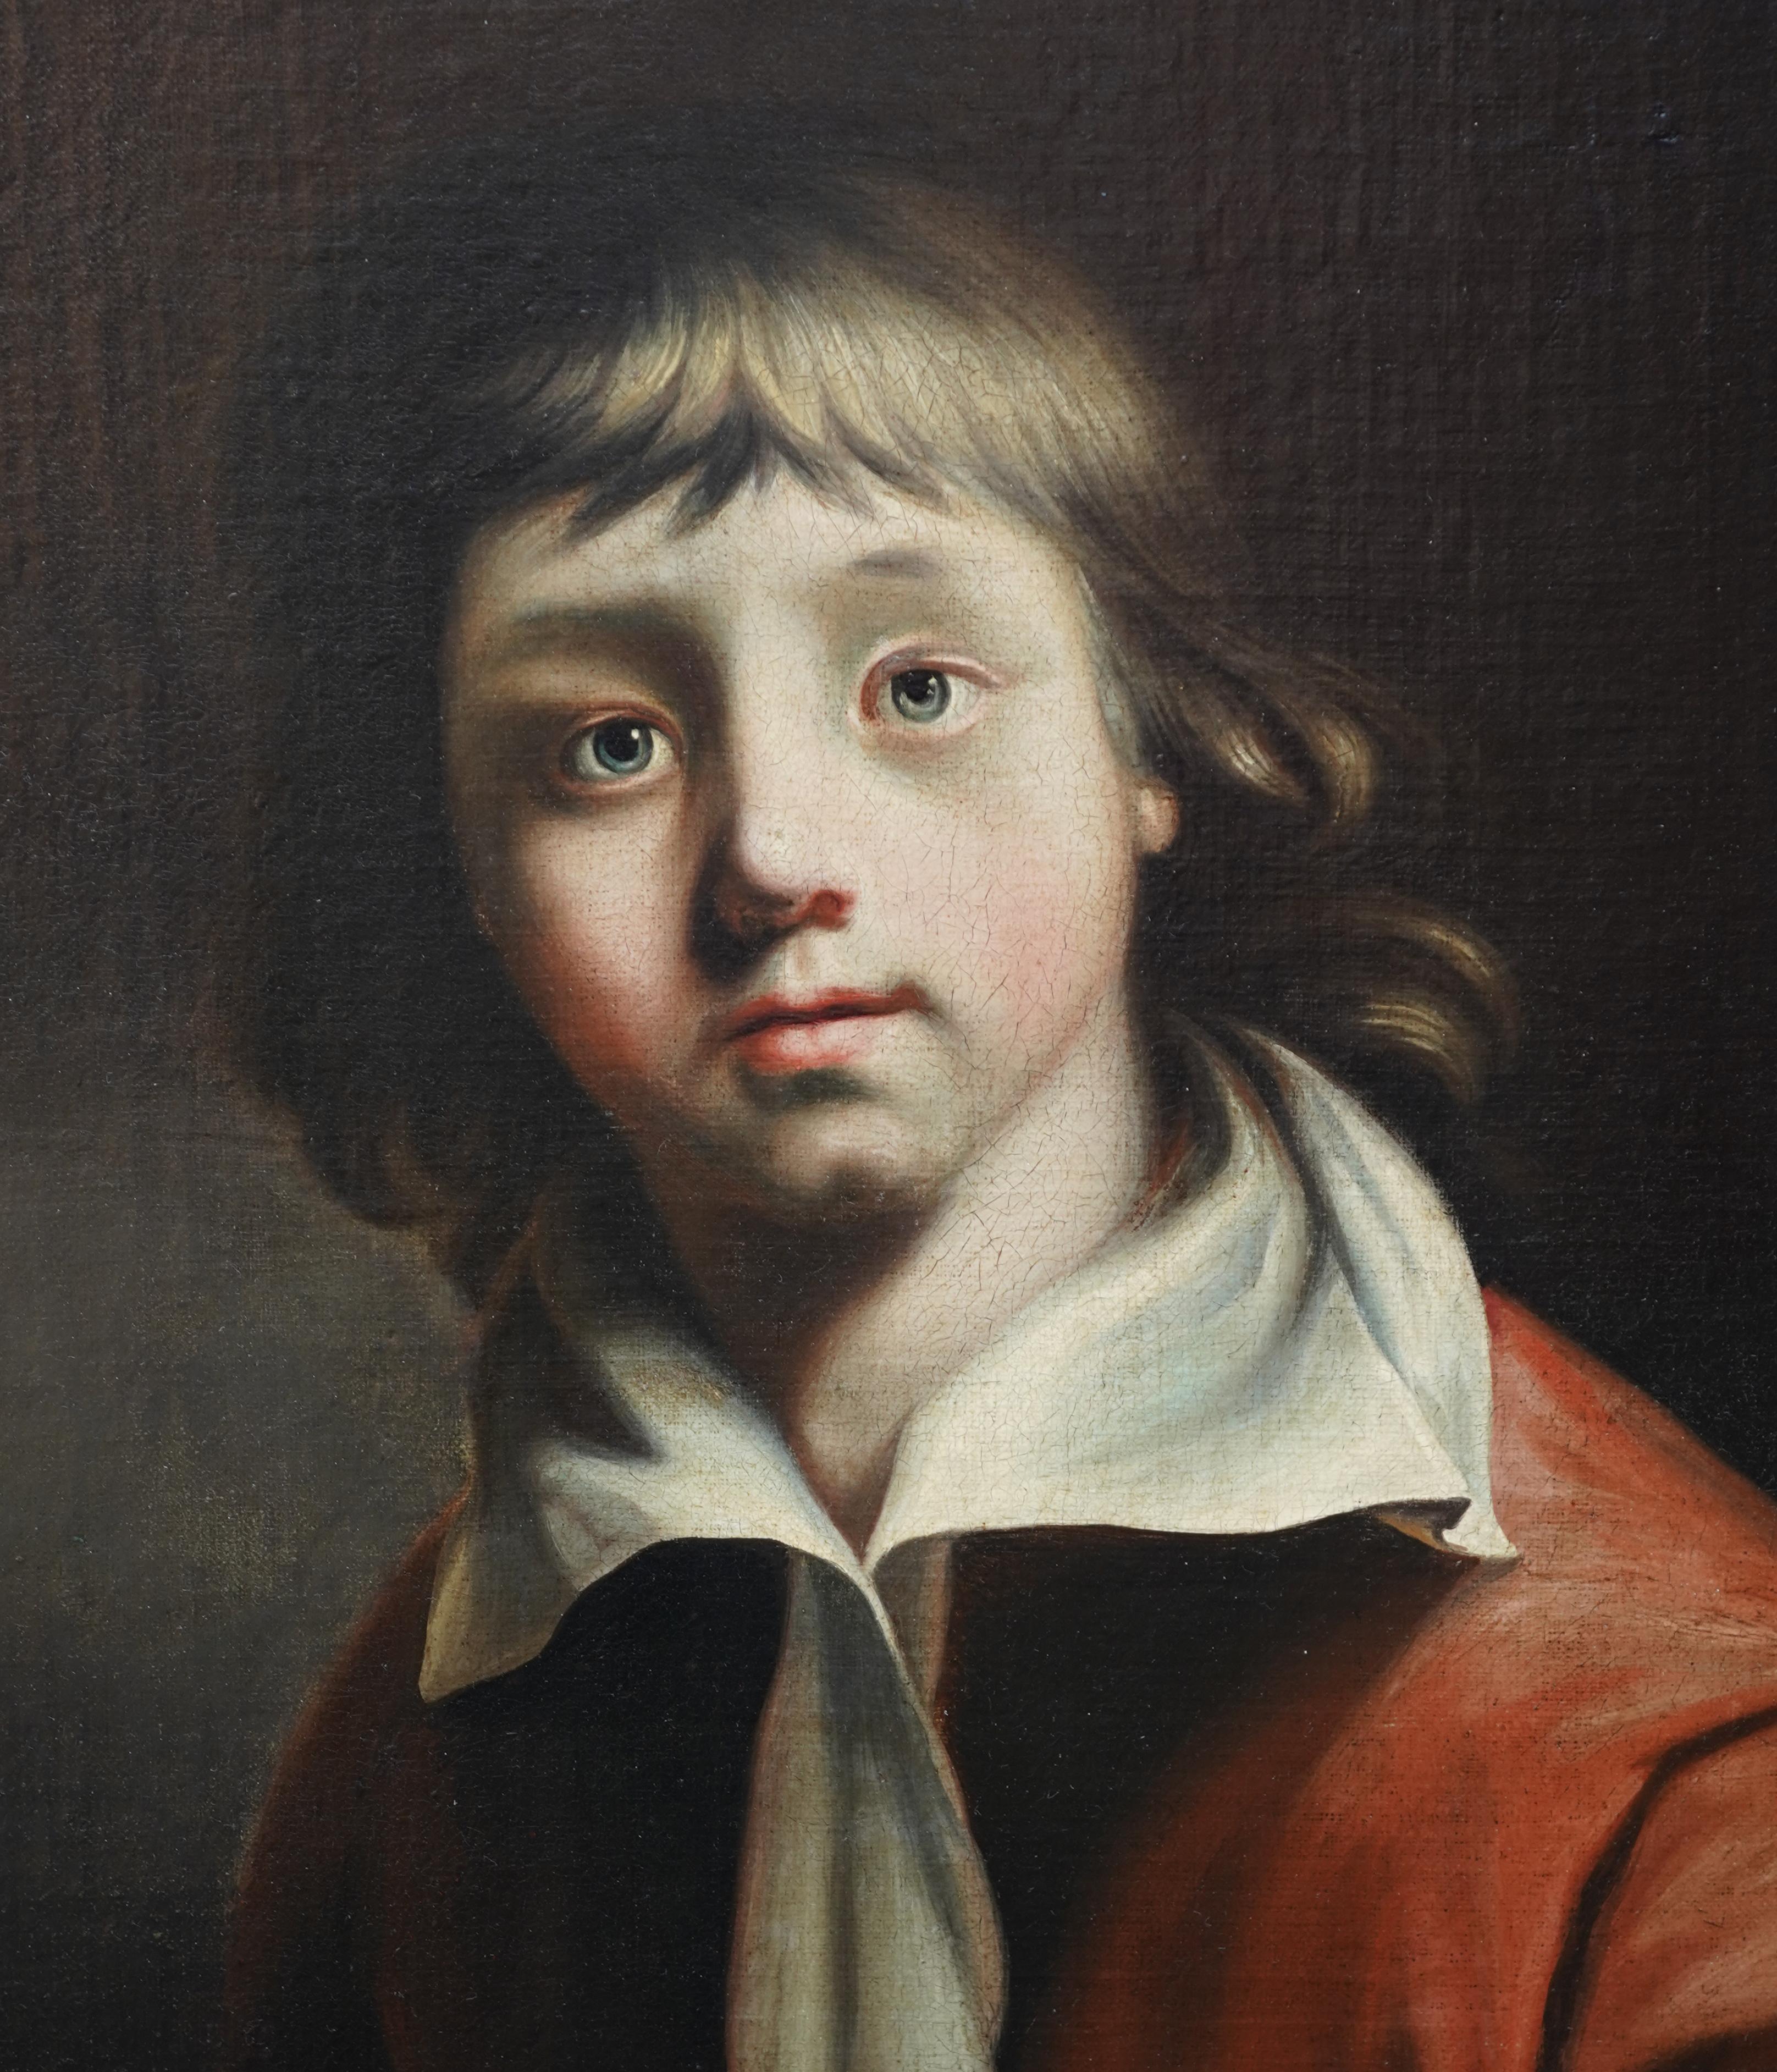 Este precioso retrato al óleo del Viejo Maestro se atribuye al círculo de Joseph Wright of Derby. Pintado hacia 1780, el cuadro representa a un muchacho con túnica y cuello ancho. Un retrato realmente encantador. 
Placa con el nombre en el marco.